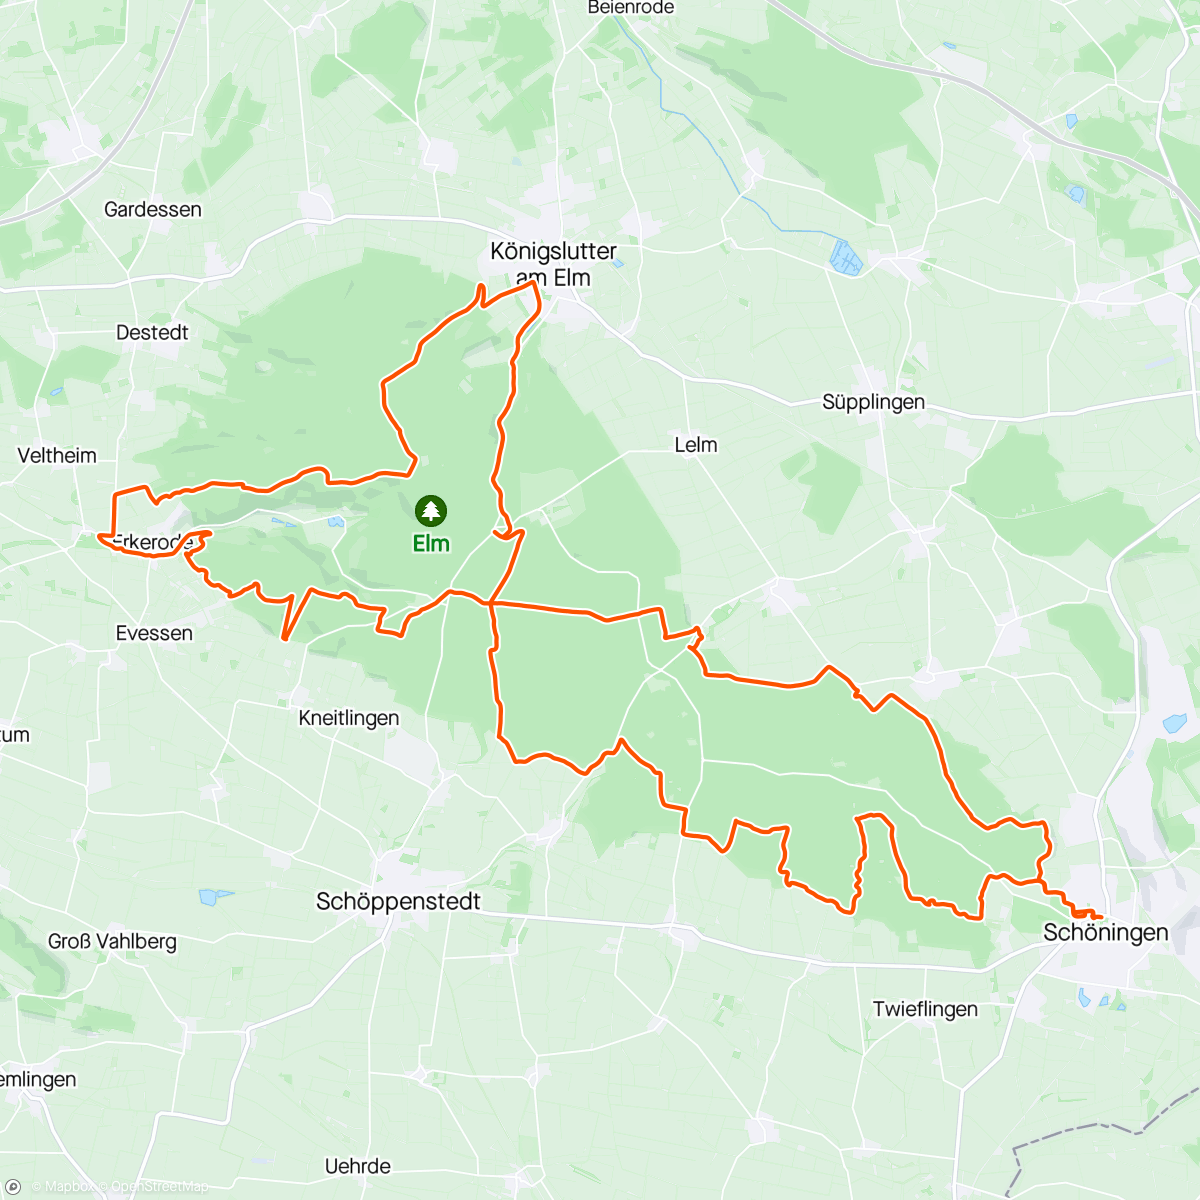 Mappa dell'attività Mountainbike-Fahrt / Ganz feine Runde heute👌 danke Christoph ☝️✊️ 😃 so was feines aber auch 😂